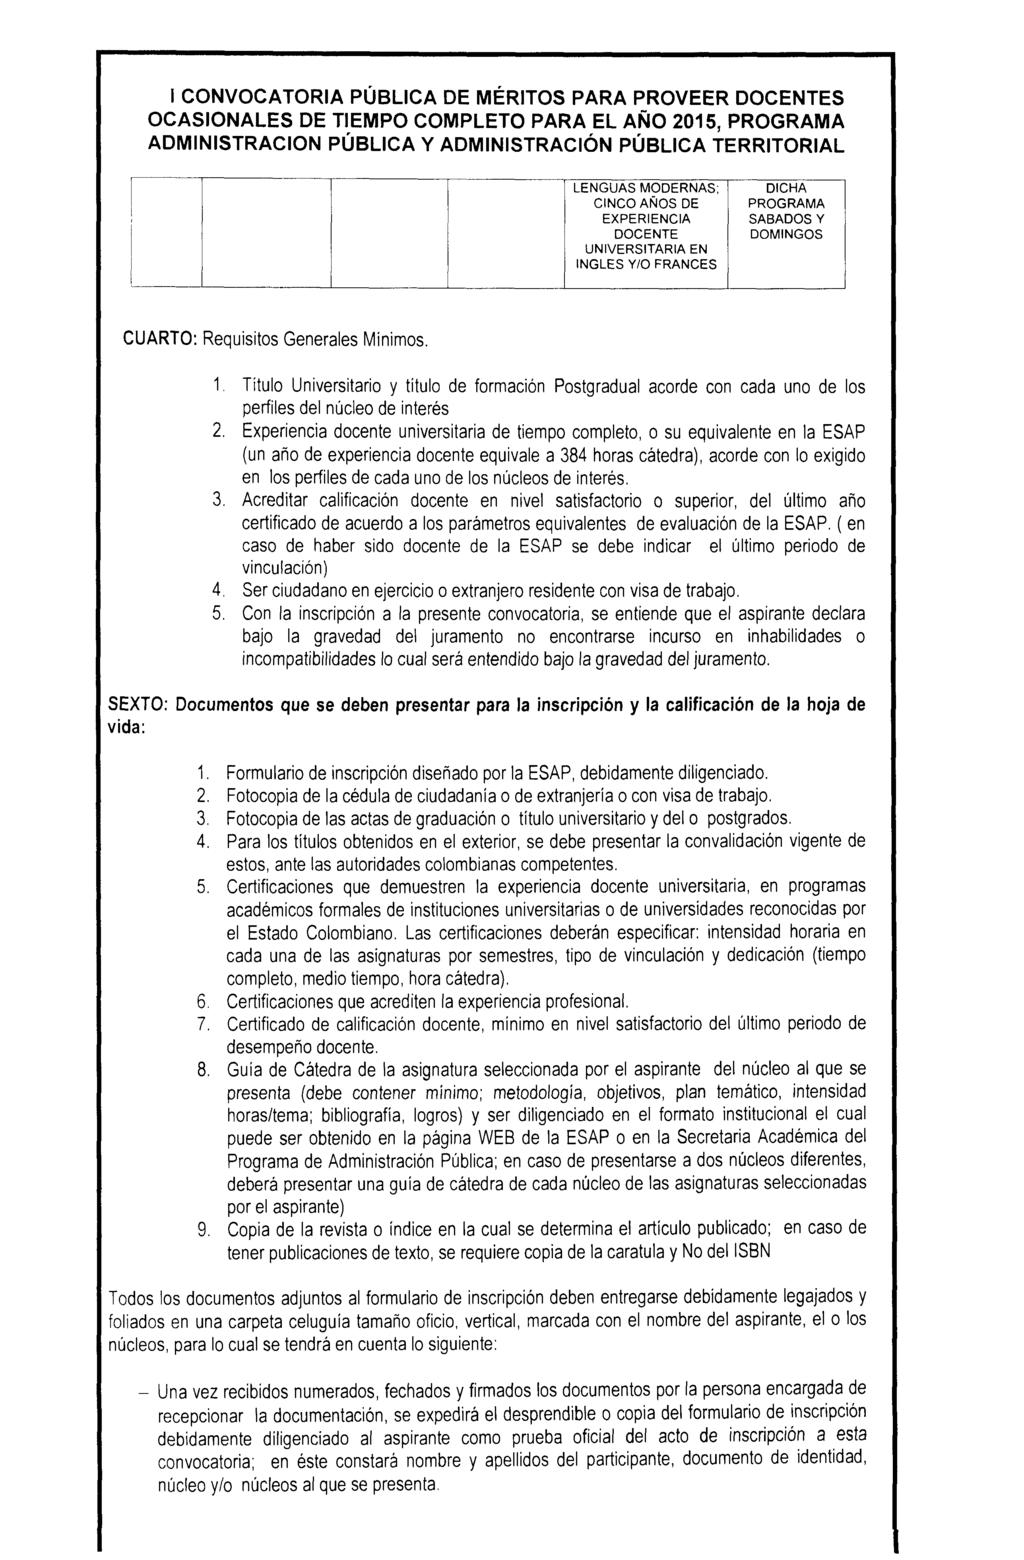 OCASIONALES DE PARA EL AÑO 2015, LENGUAS MODERNAS: CINCO AÑOS DE UNIVERSITARIA EN INGLES Y/O FRANCES CUARTO; Requisitos Generales IVIinimos. 1. 2. 3, 4. 5.